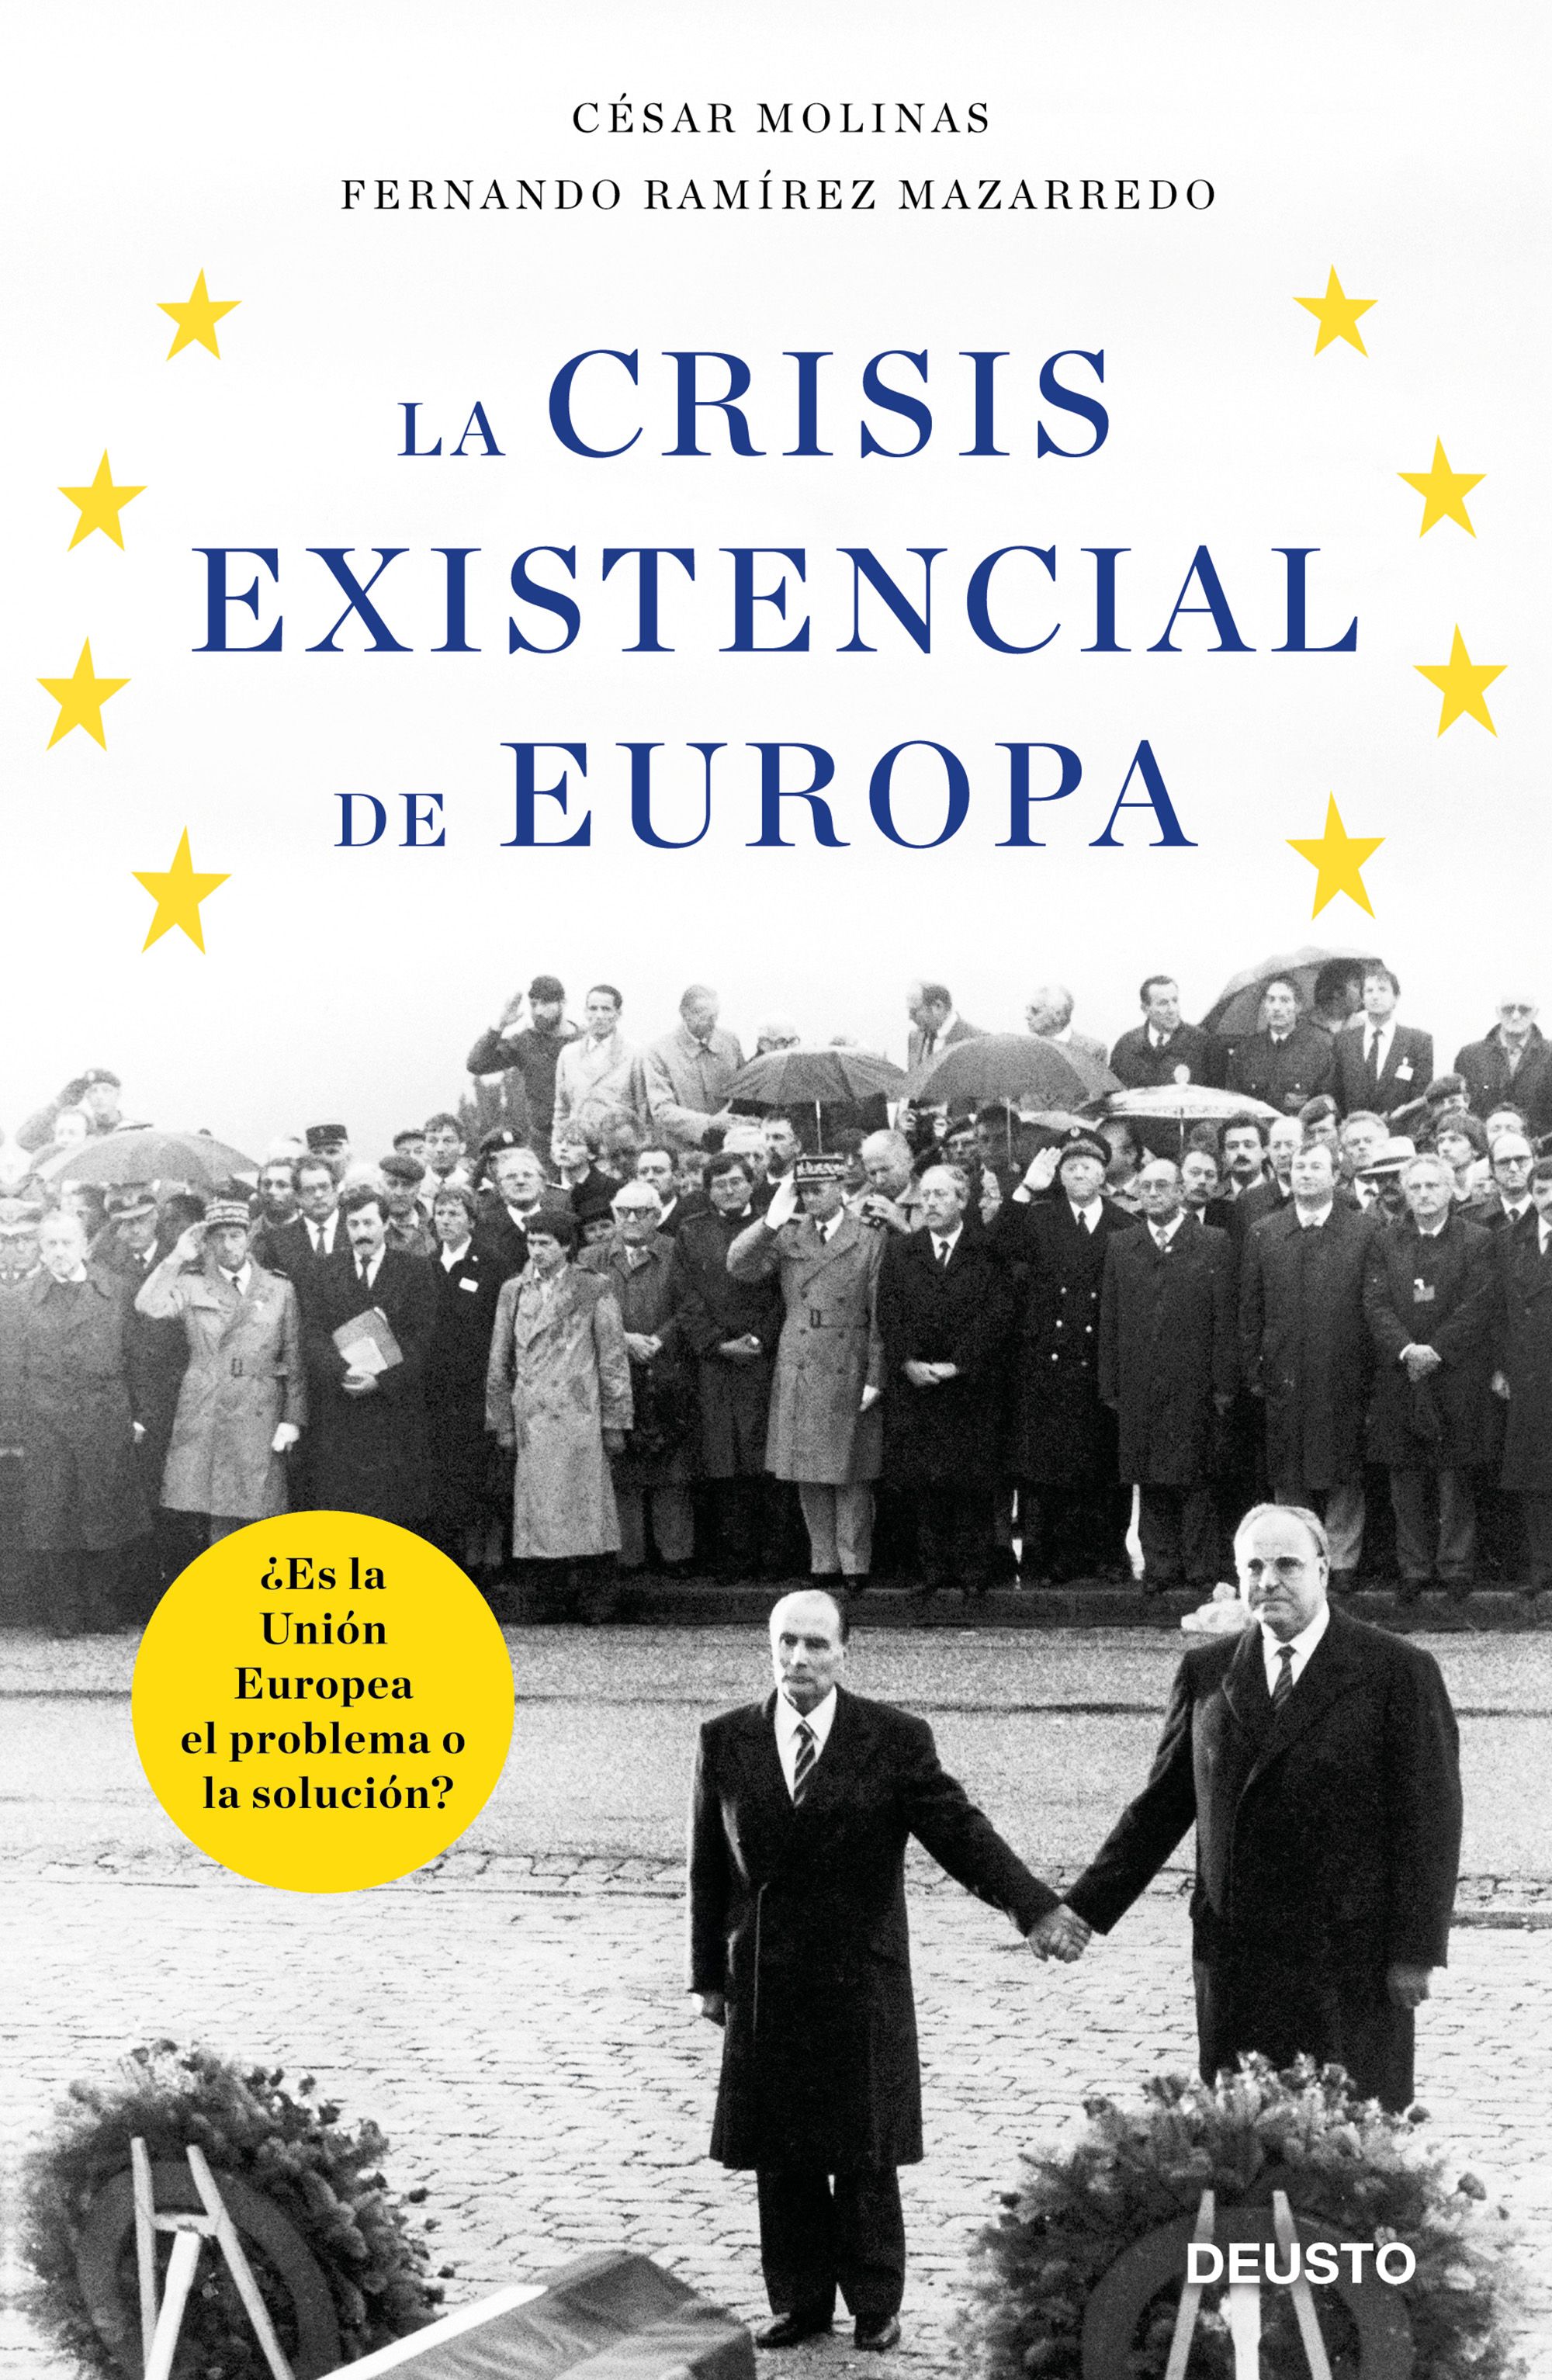 La crisis existencial de Europa, por César Molinas